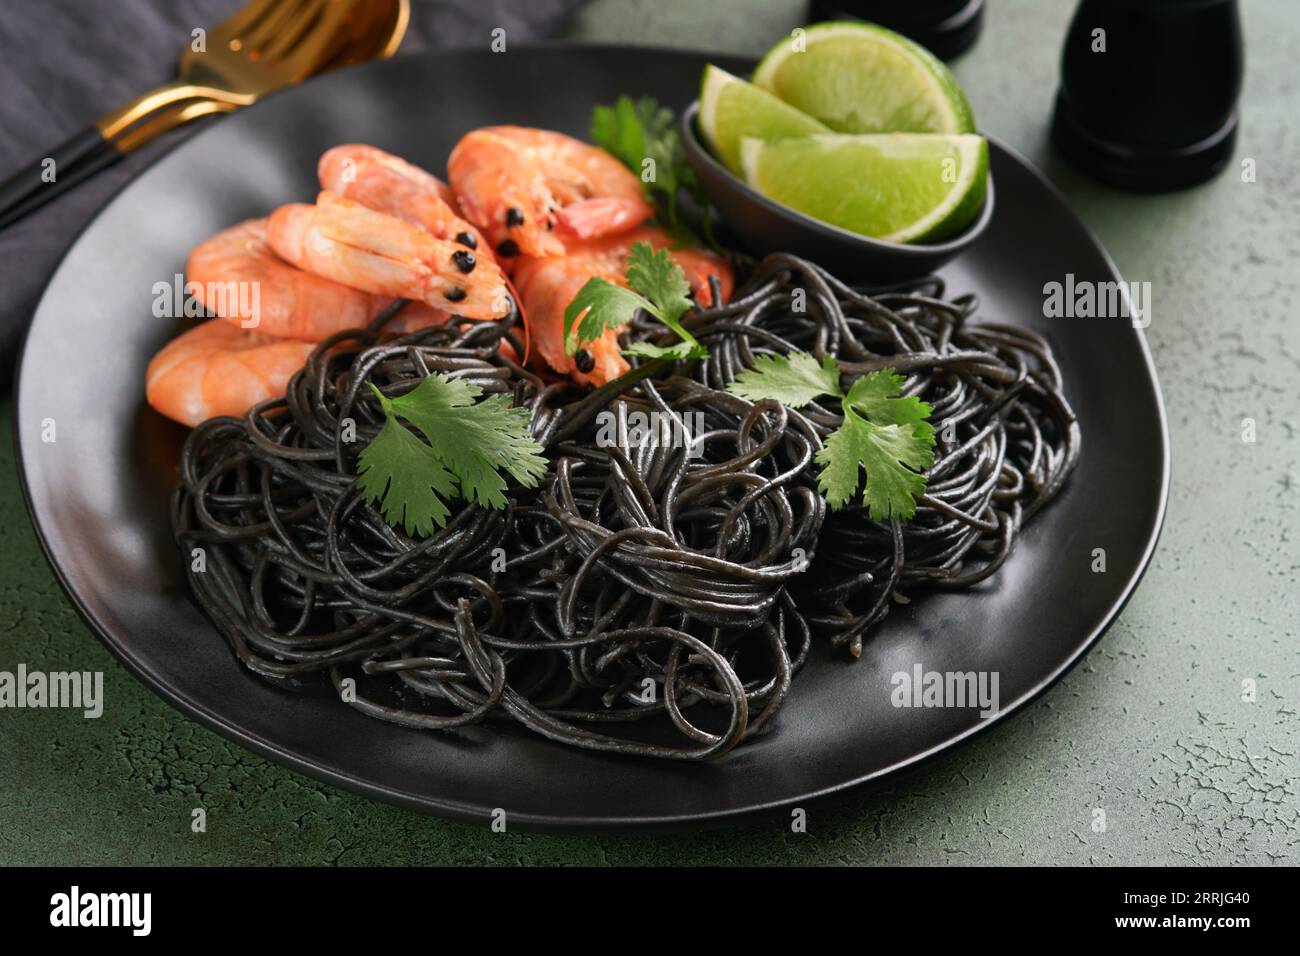 Spaghetti neri di gamberi su piatto nero su fondo scuro di cemento. Pasta con inchiostro calamaro e gamberi. Pasta a base di pesce. Vista dall'alto sulla linguetta in pietra verde Foto Stock